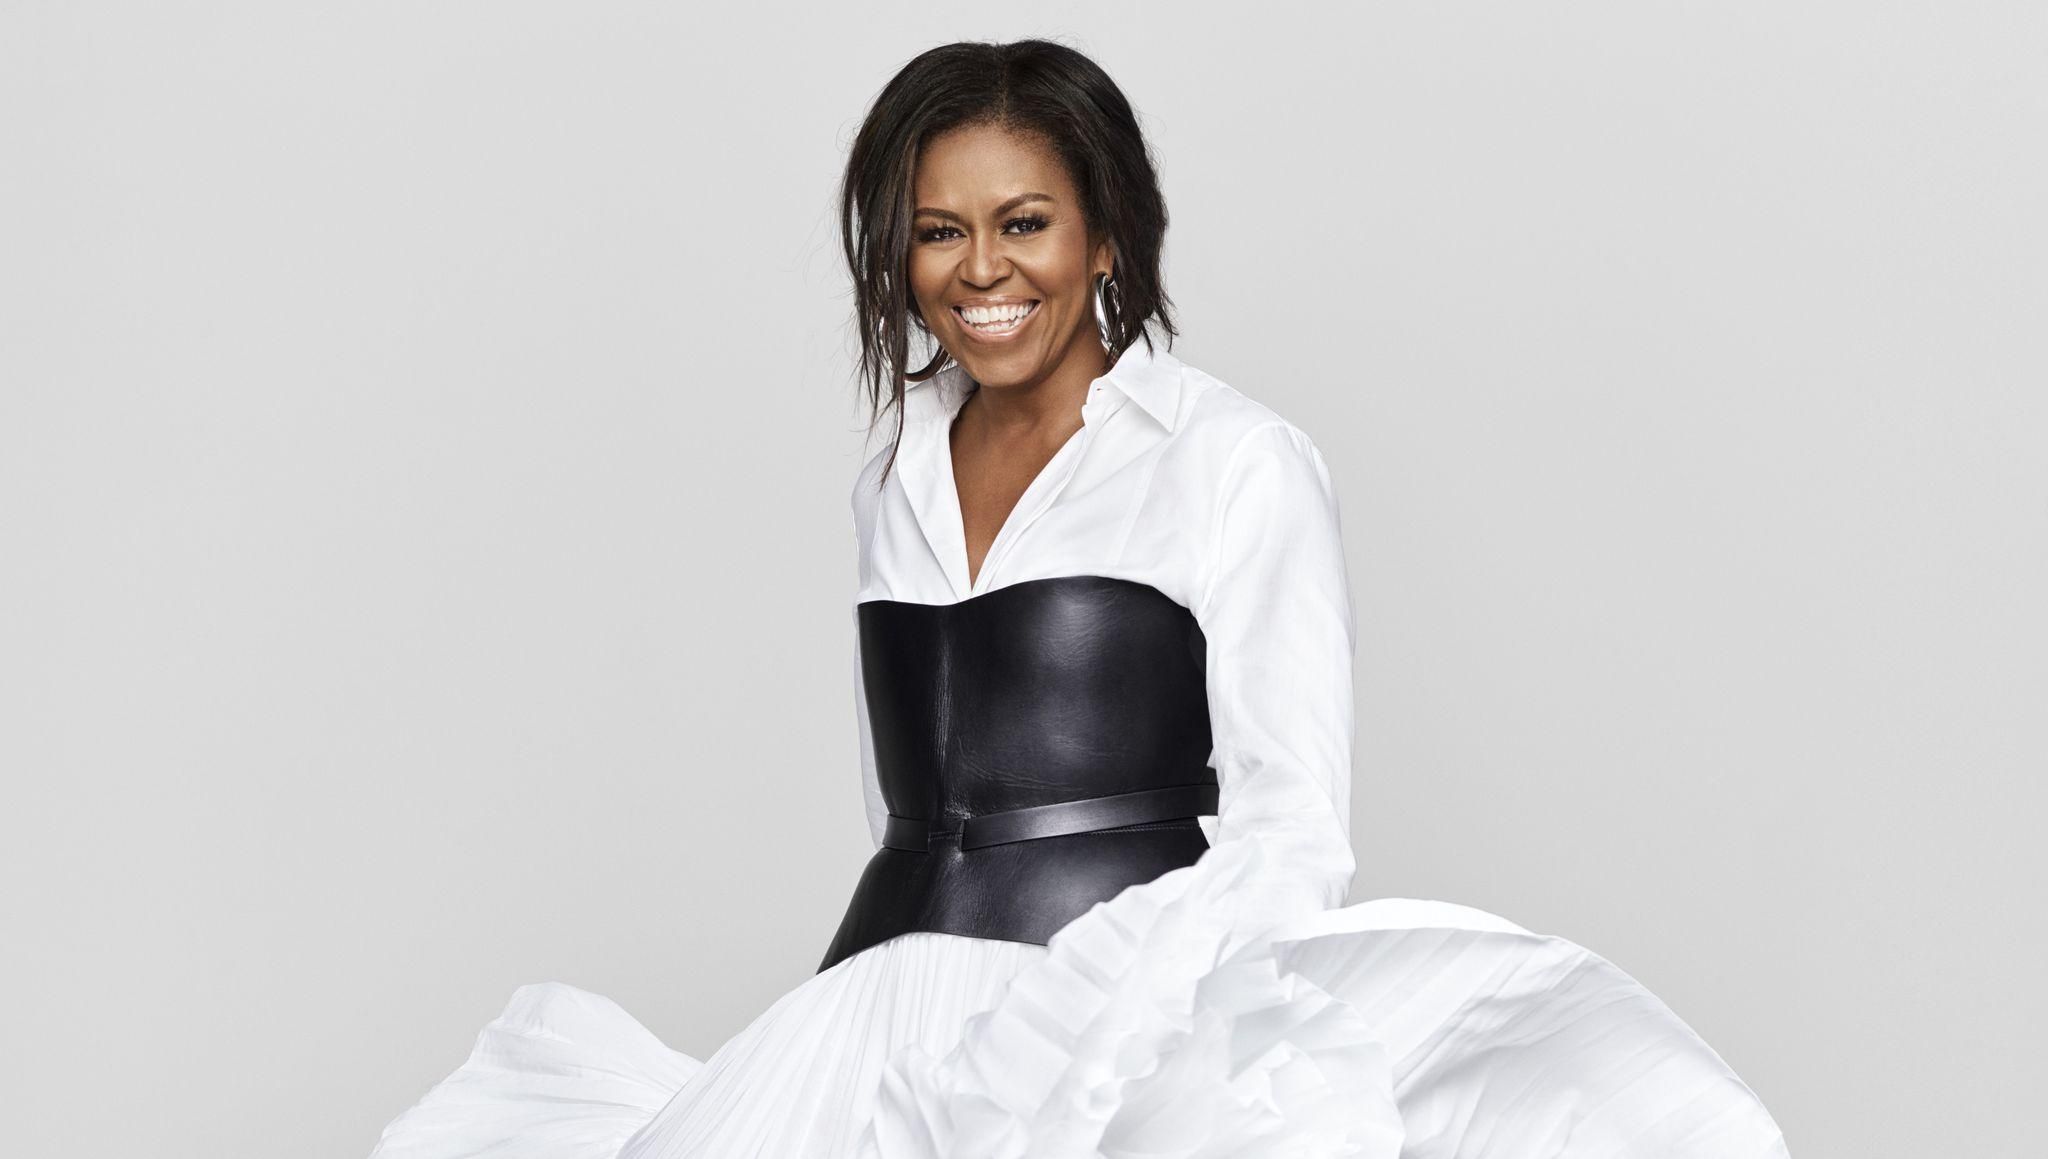 "Мы с Бараком пример подражания": откровенное интервью Мишель Обамы для Elle